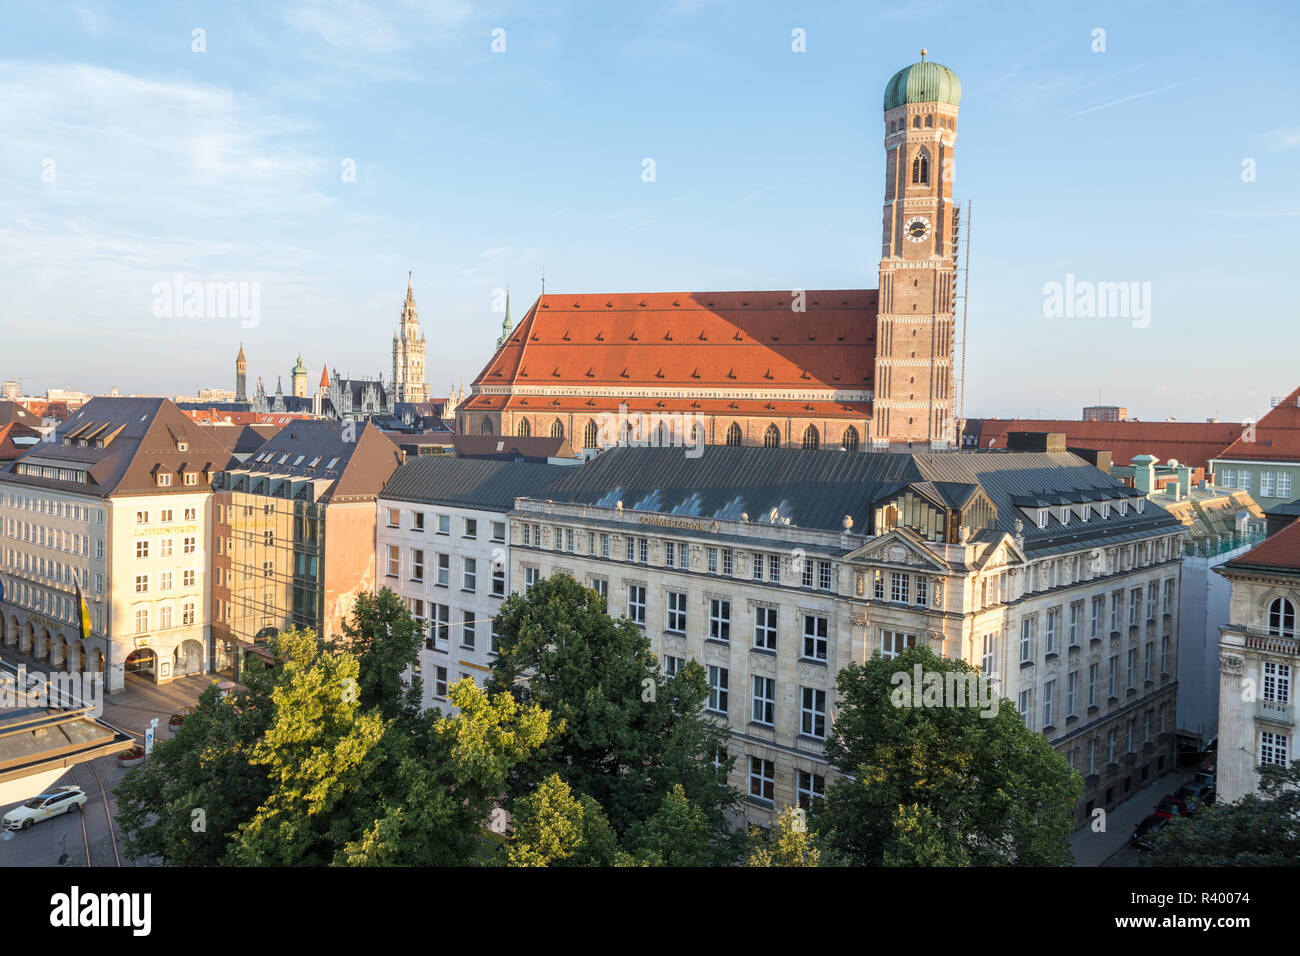 Vista de la Iglesia de Nuestra Señora, la catedral de Munich, trasero de New Town Hall, Munich, Alemania Foto de stock